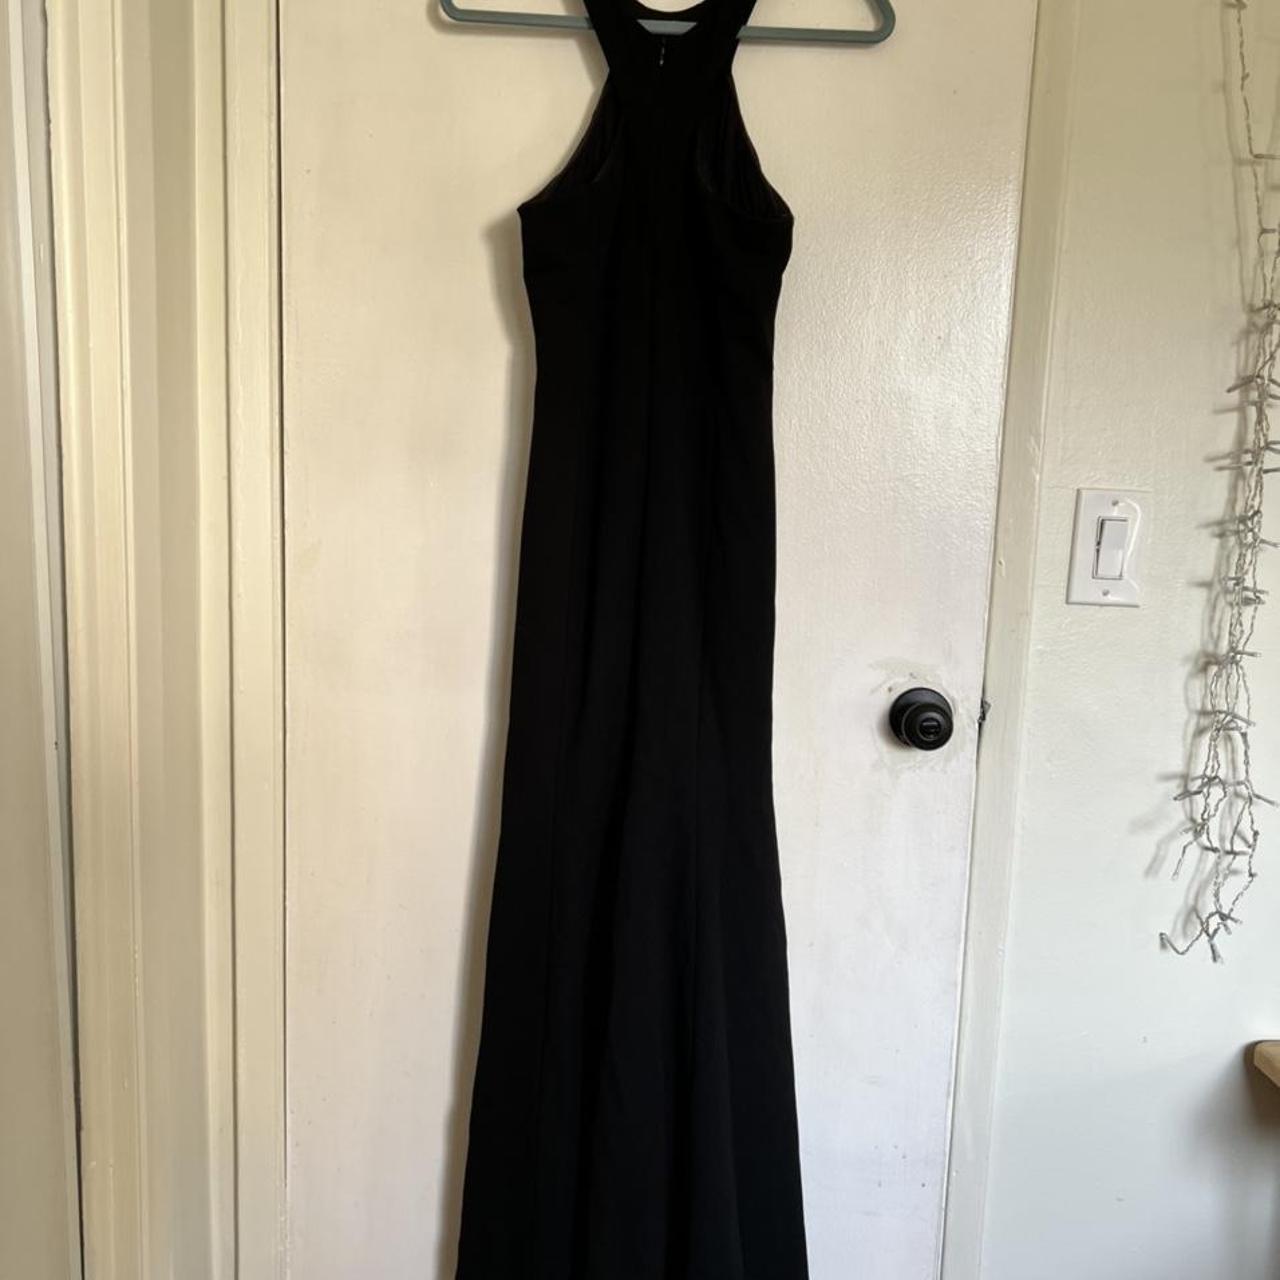 Product Image 3 - Black Fishtail Floor Length Dress

Halter